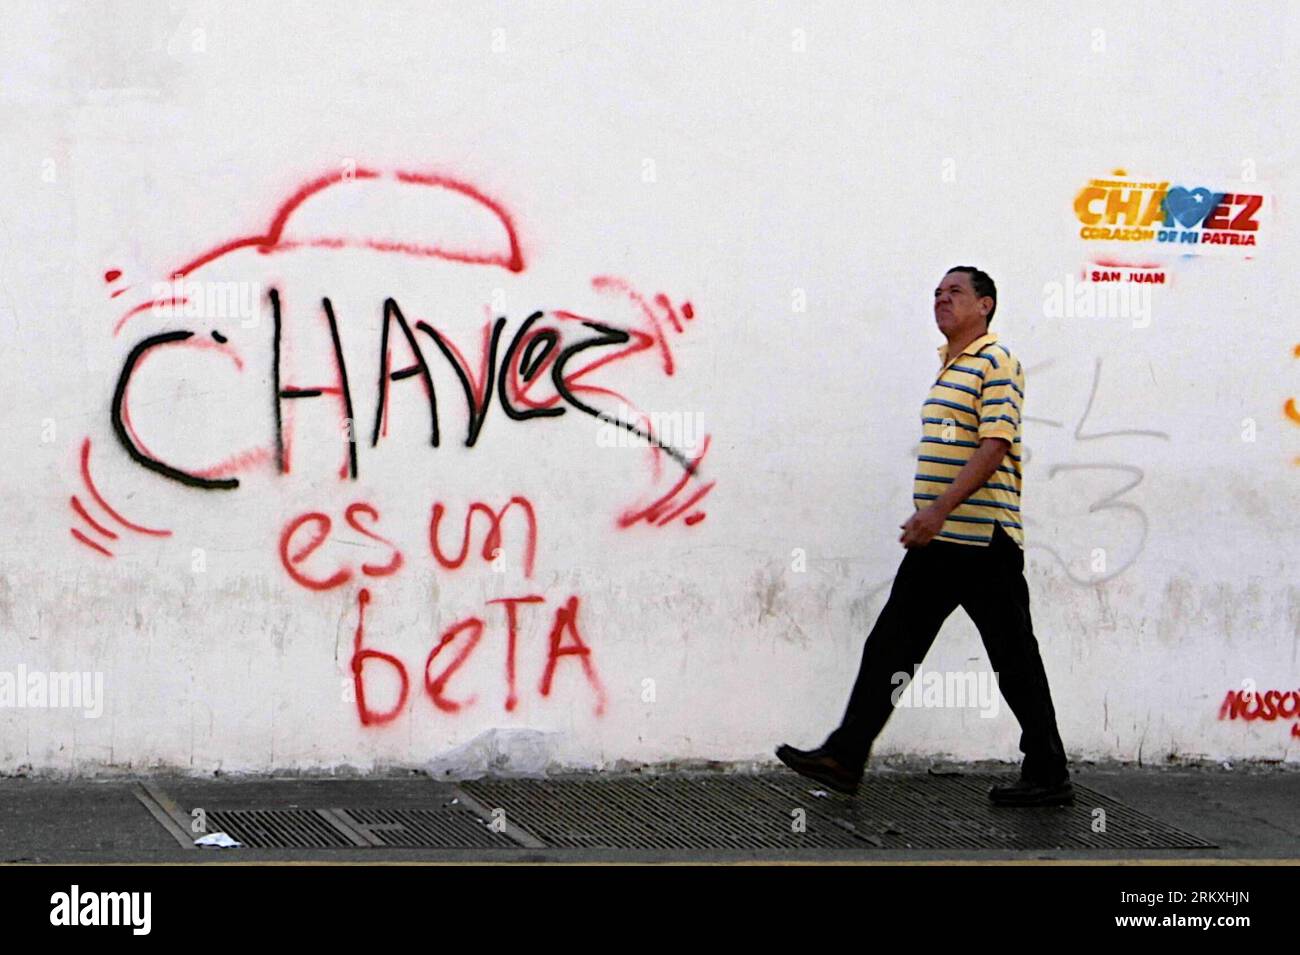 Bildnummer : 58961421 Datum : 02.01.2013 Copyright : imago/Xinhua (130103) -- CARACAS, 2 janvier 2013 (Xinhua) -- un homme passe devant un graffiti du président vénézuélien Hugo Chavez à Caracas, Venezuela, le 2 janvier 2013. Le vice-président vénézuélien Nicolas Maduro a reconnu le 30 décembre 2012 l’émergence de nouvelles complications respiratoires qui affectent la santé du président Hugo Chavez opéré à Cuba il y a 19 jours. (Xinhua/Daniel Guimares/Agencia Estado) VENEZUELA-CARACAS-CHAVEZ PUBLICATIONxNOTxINxCHN Politik Gesellschaft Schriftzug Graffiti x2x xmb 2013 quer o0 Gesundheit Unterstützung 5896 Banque D'Images